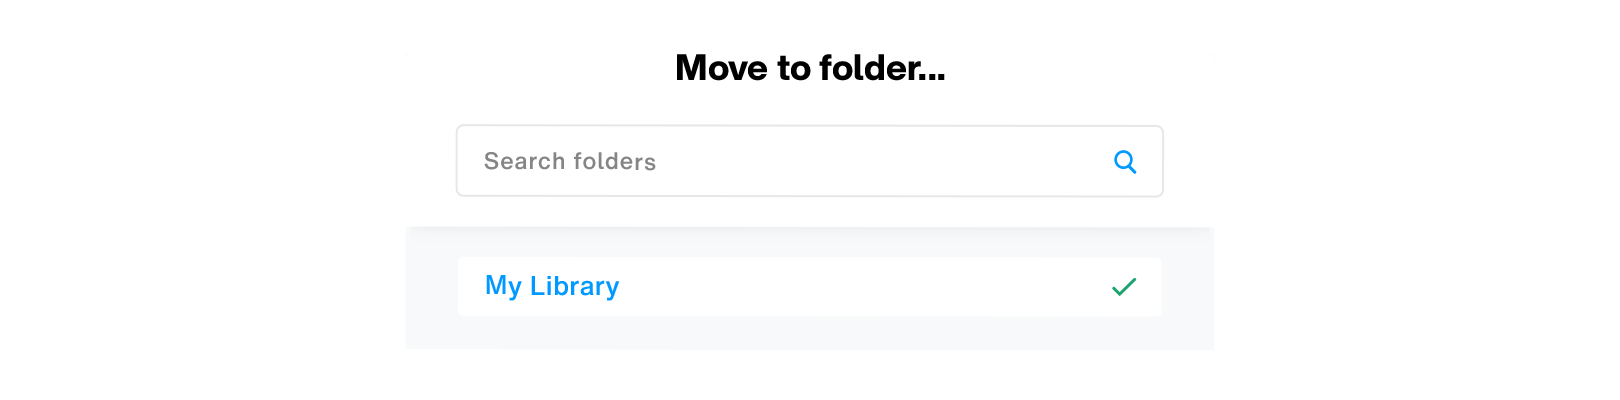 Move to folder dialog 01